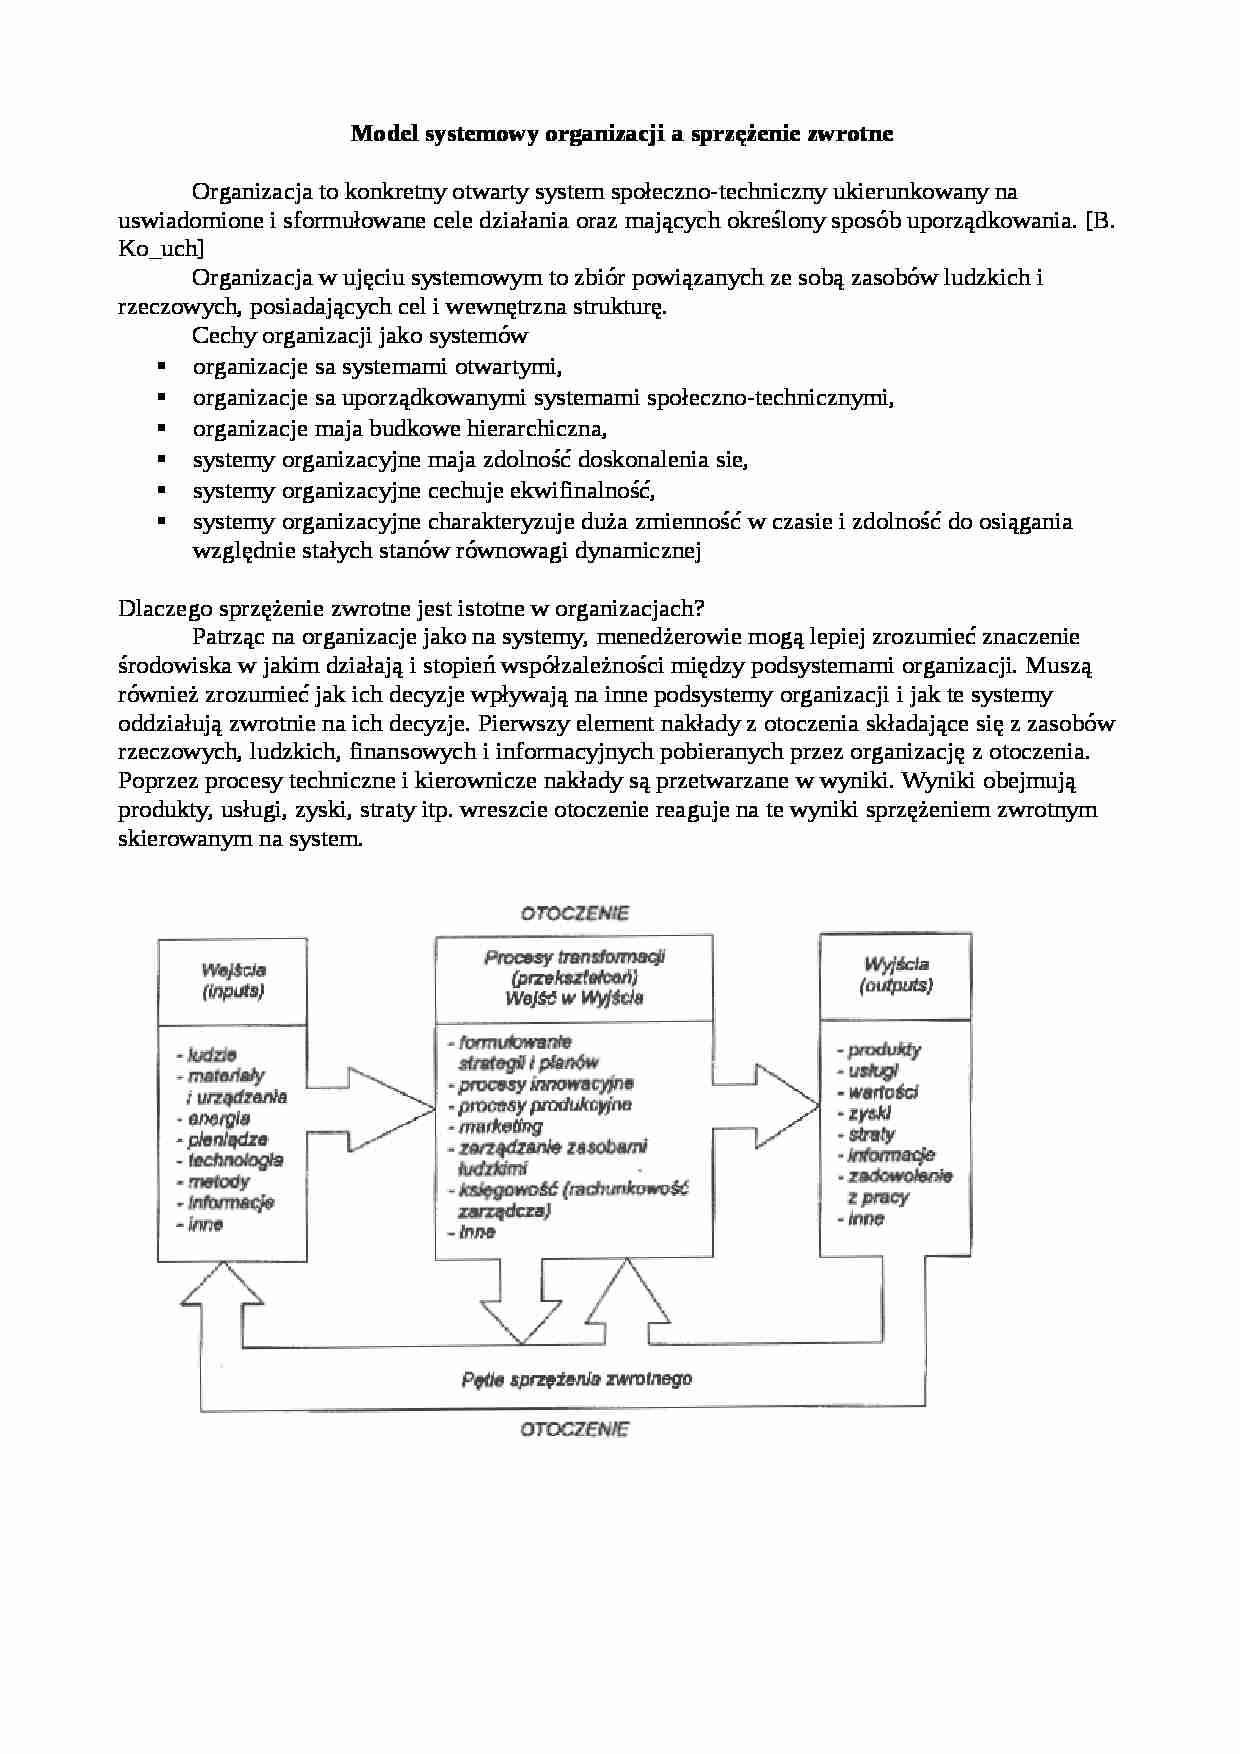 Model systemowy organizacji a sprzężenie zwrotne - strona 1